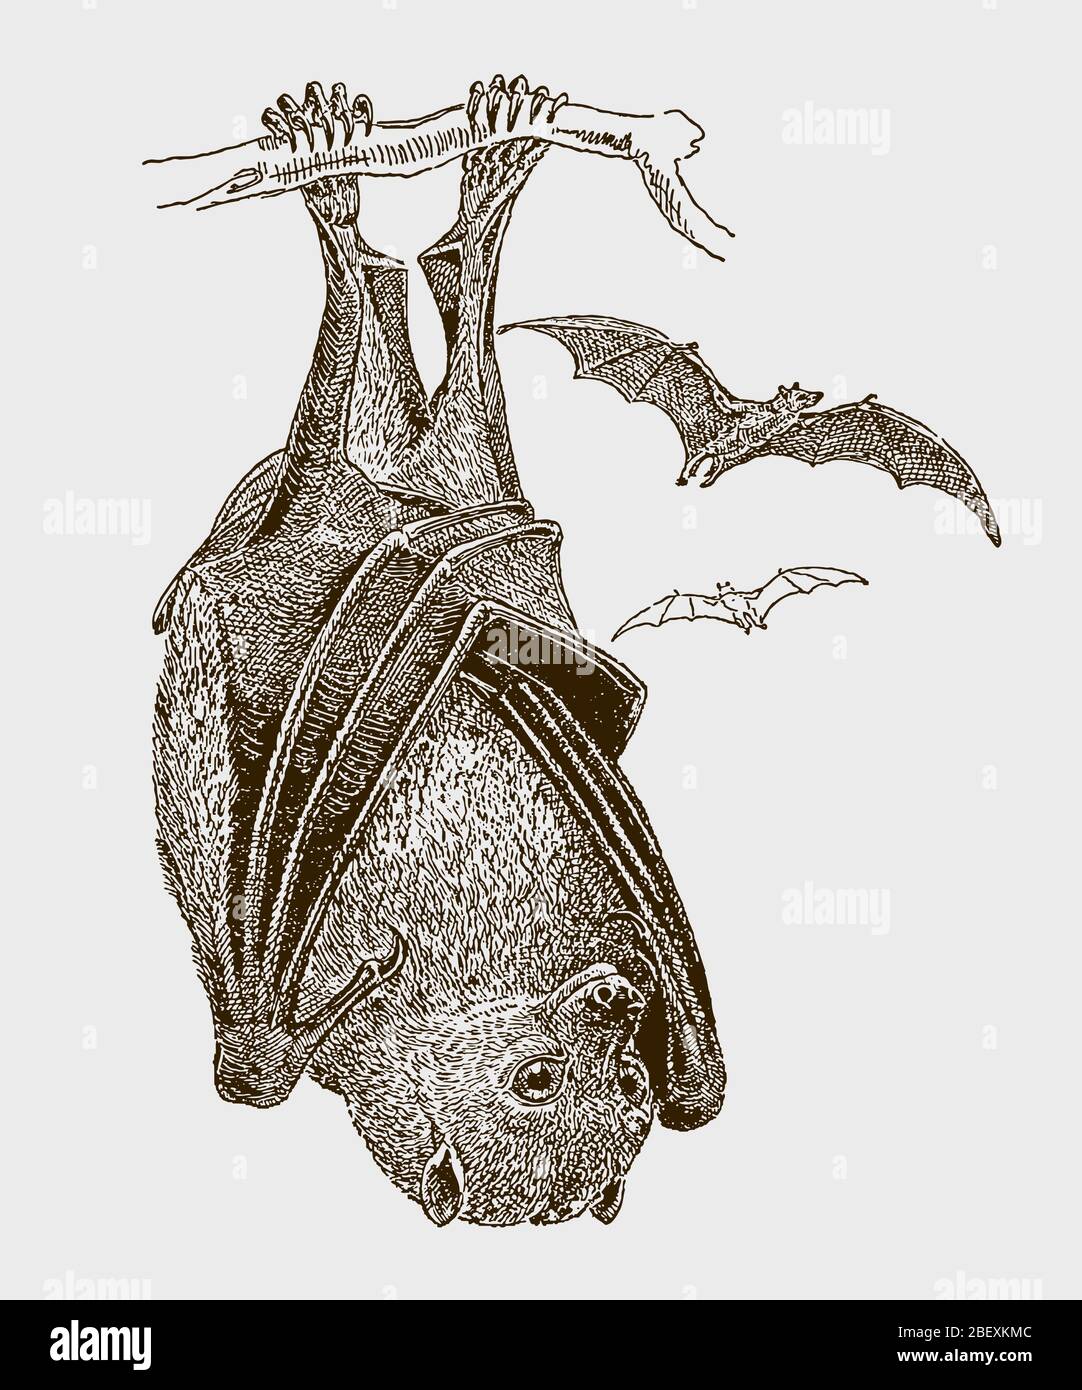 Grand renard volant ou le long, pteropus vampyrus penchant à l'envers à une branche, en vue de face. Illustration après une gravure du XIXe siècle Illustration de Vecteur